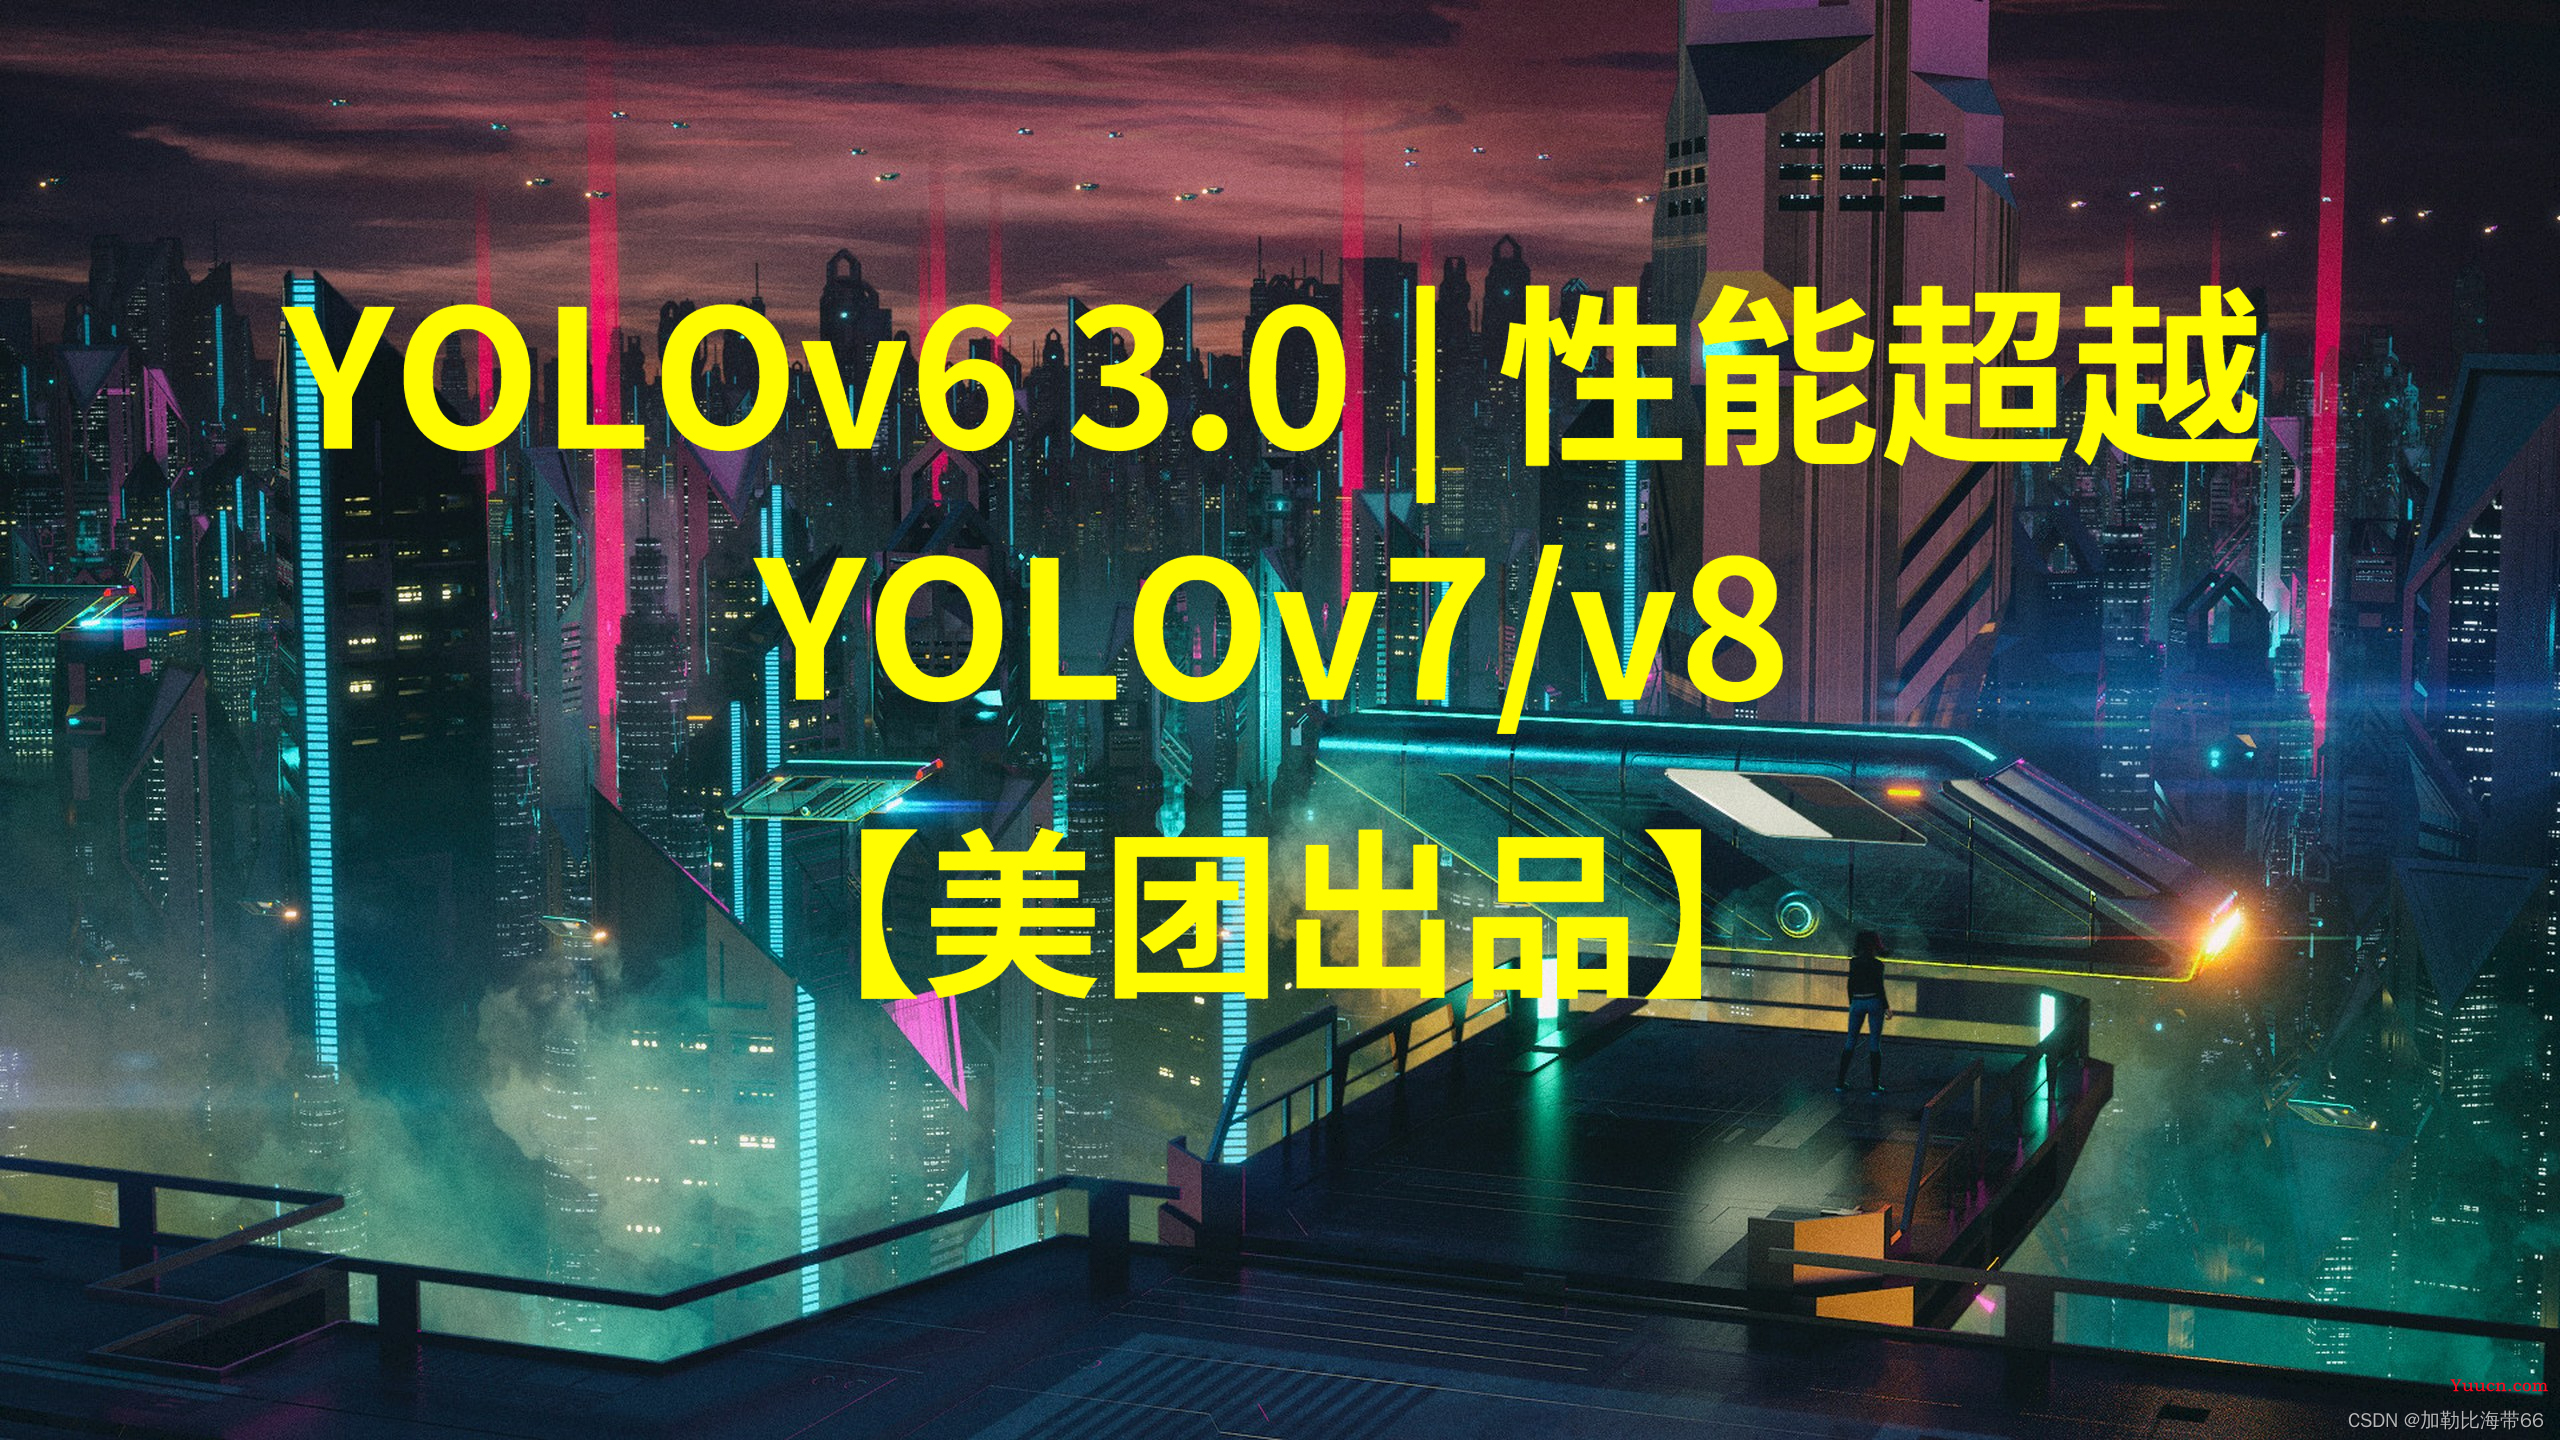 美团出品 | YOLOv6 v3.0 is Coming（超越YOLOv7、v8）